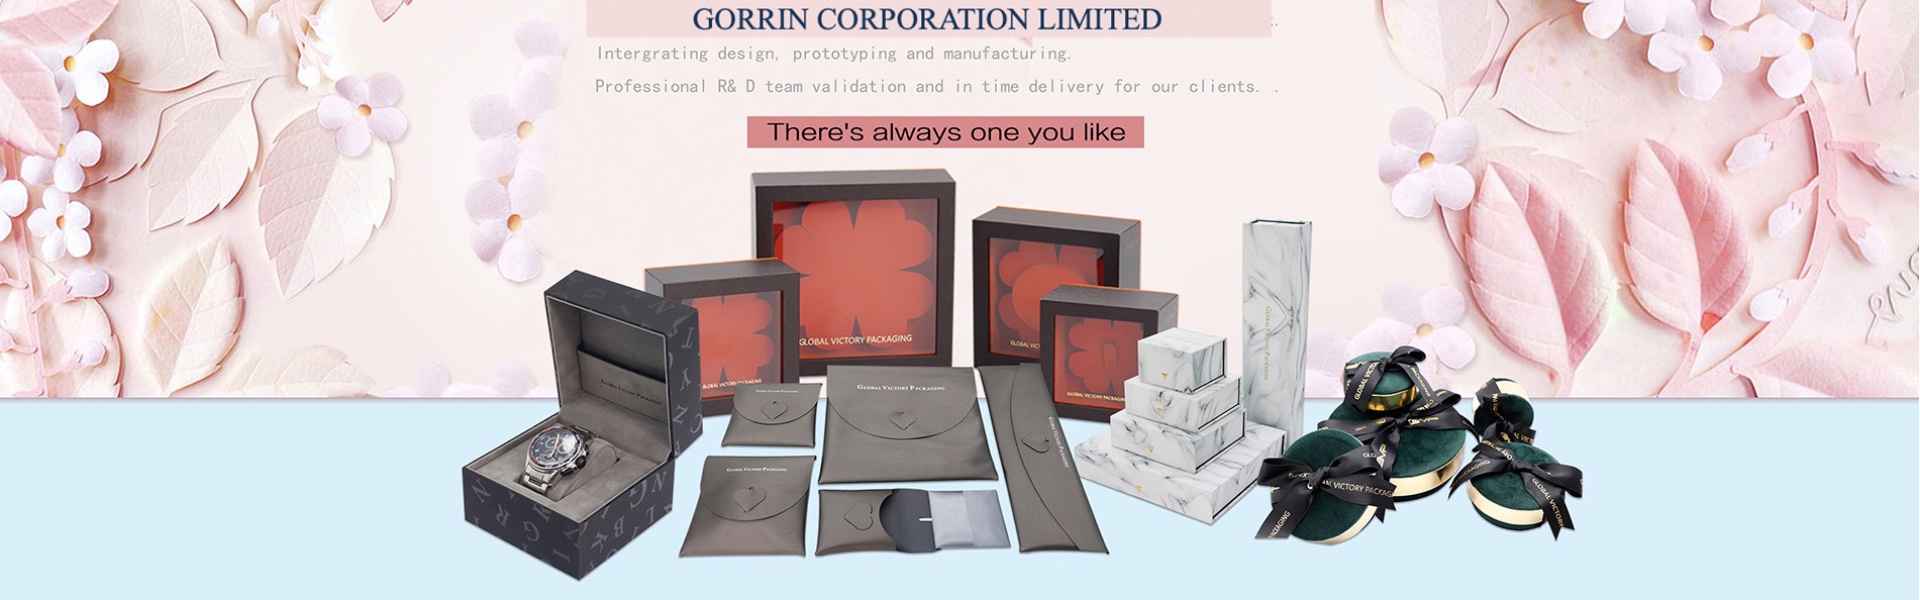 кутия, бижута, кутия за бижута.,Gorrin corporation limited